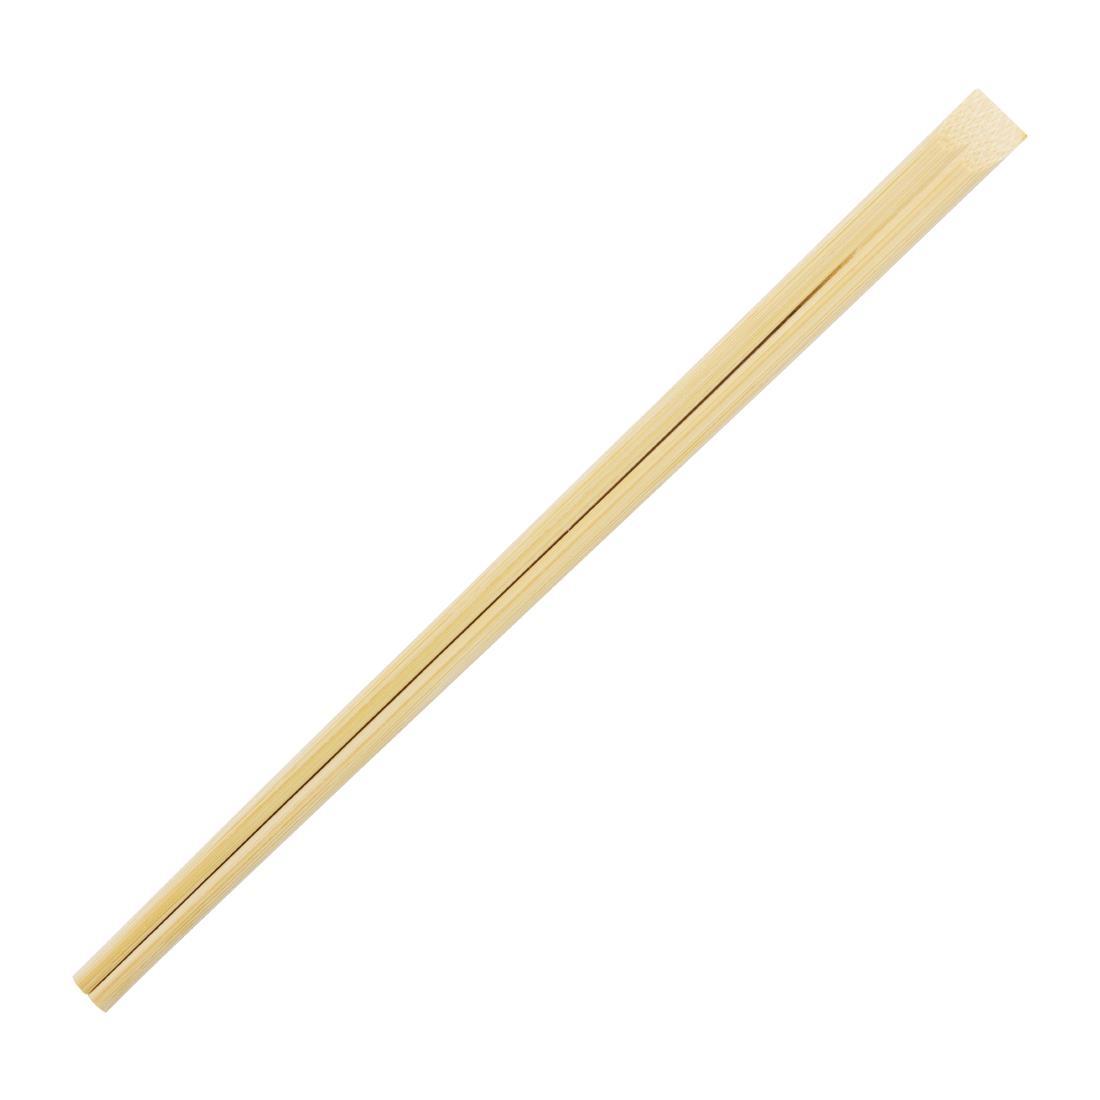 Fiesta Compostable Bamboo Chopsticks (Pack of 100) - DK393  - 1